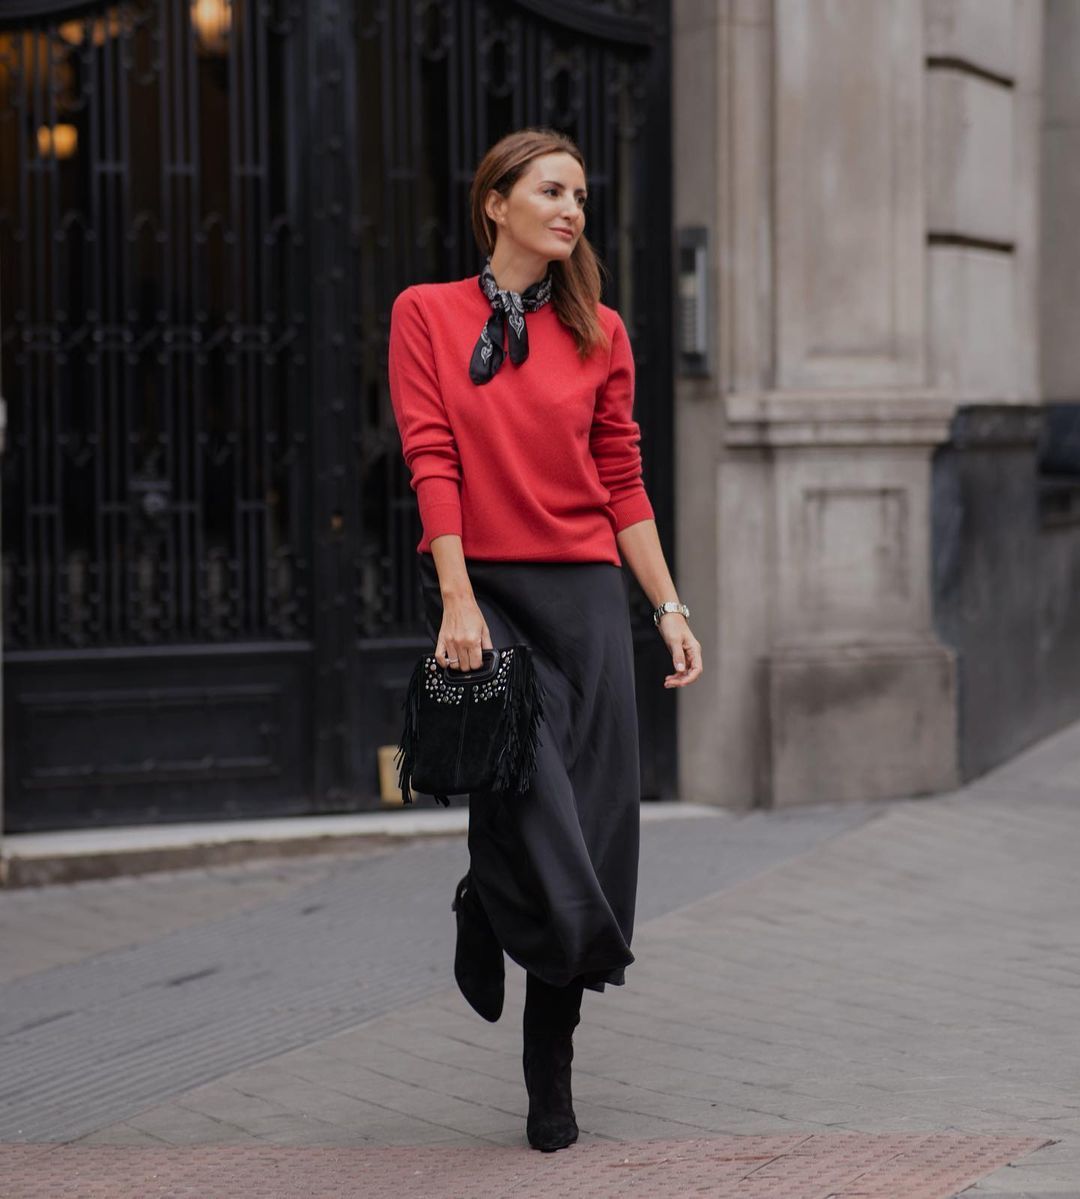 Un look perfecto para Navidad: jersey rojo y falda negra.